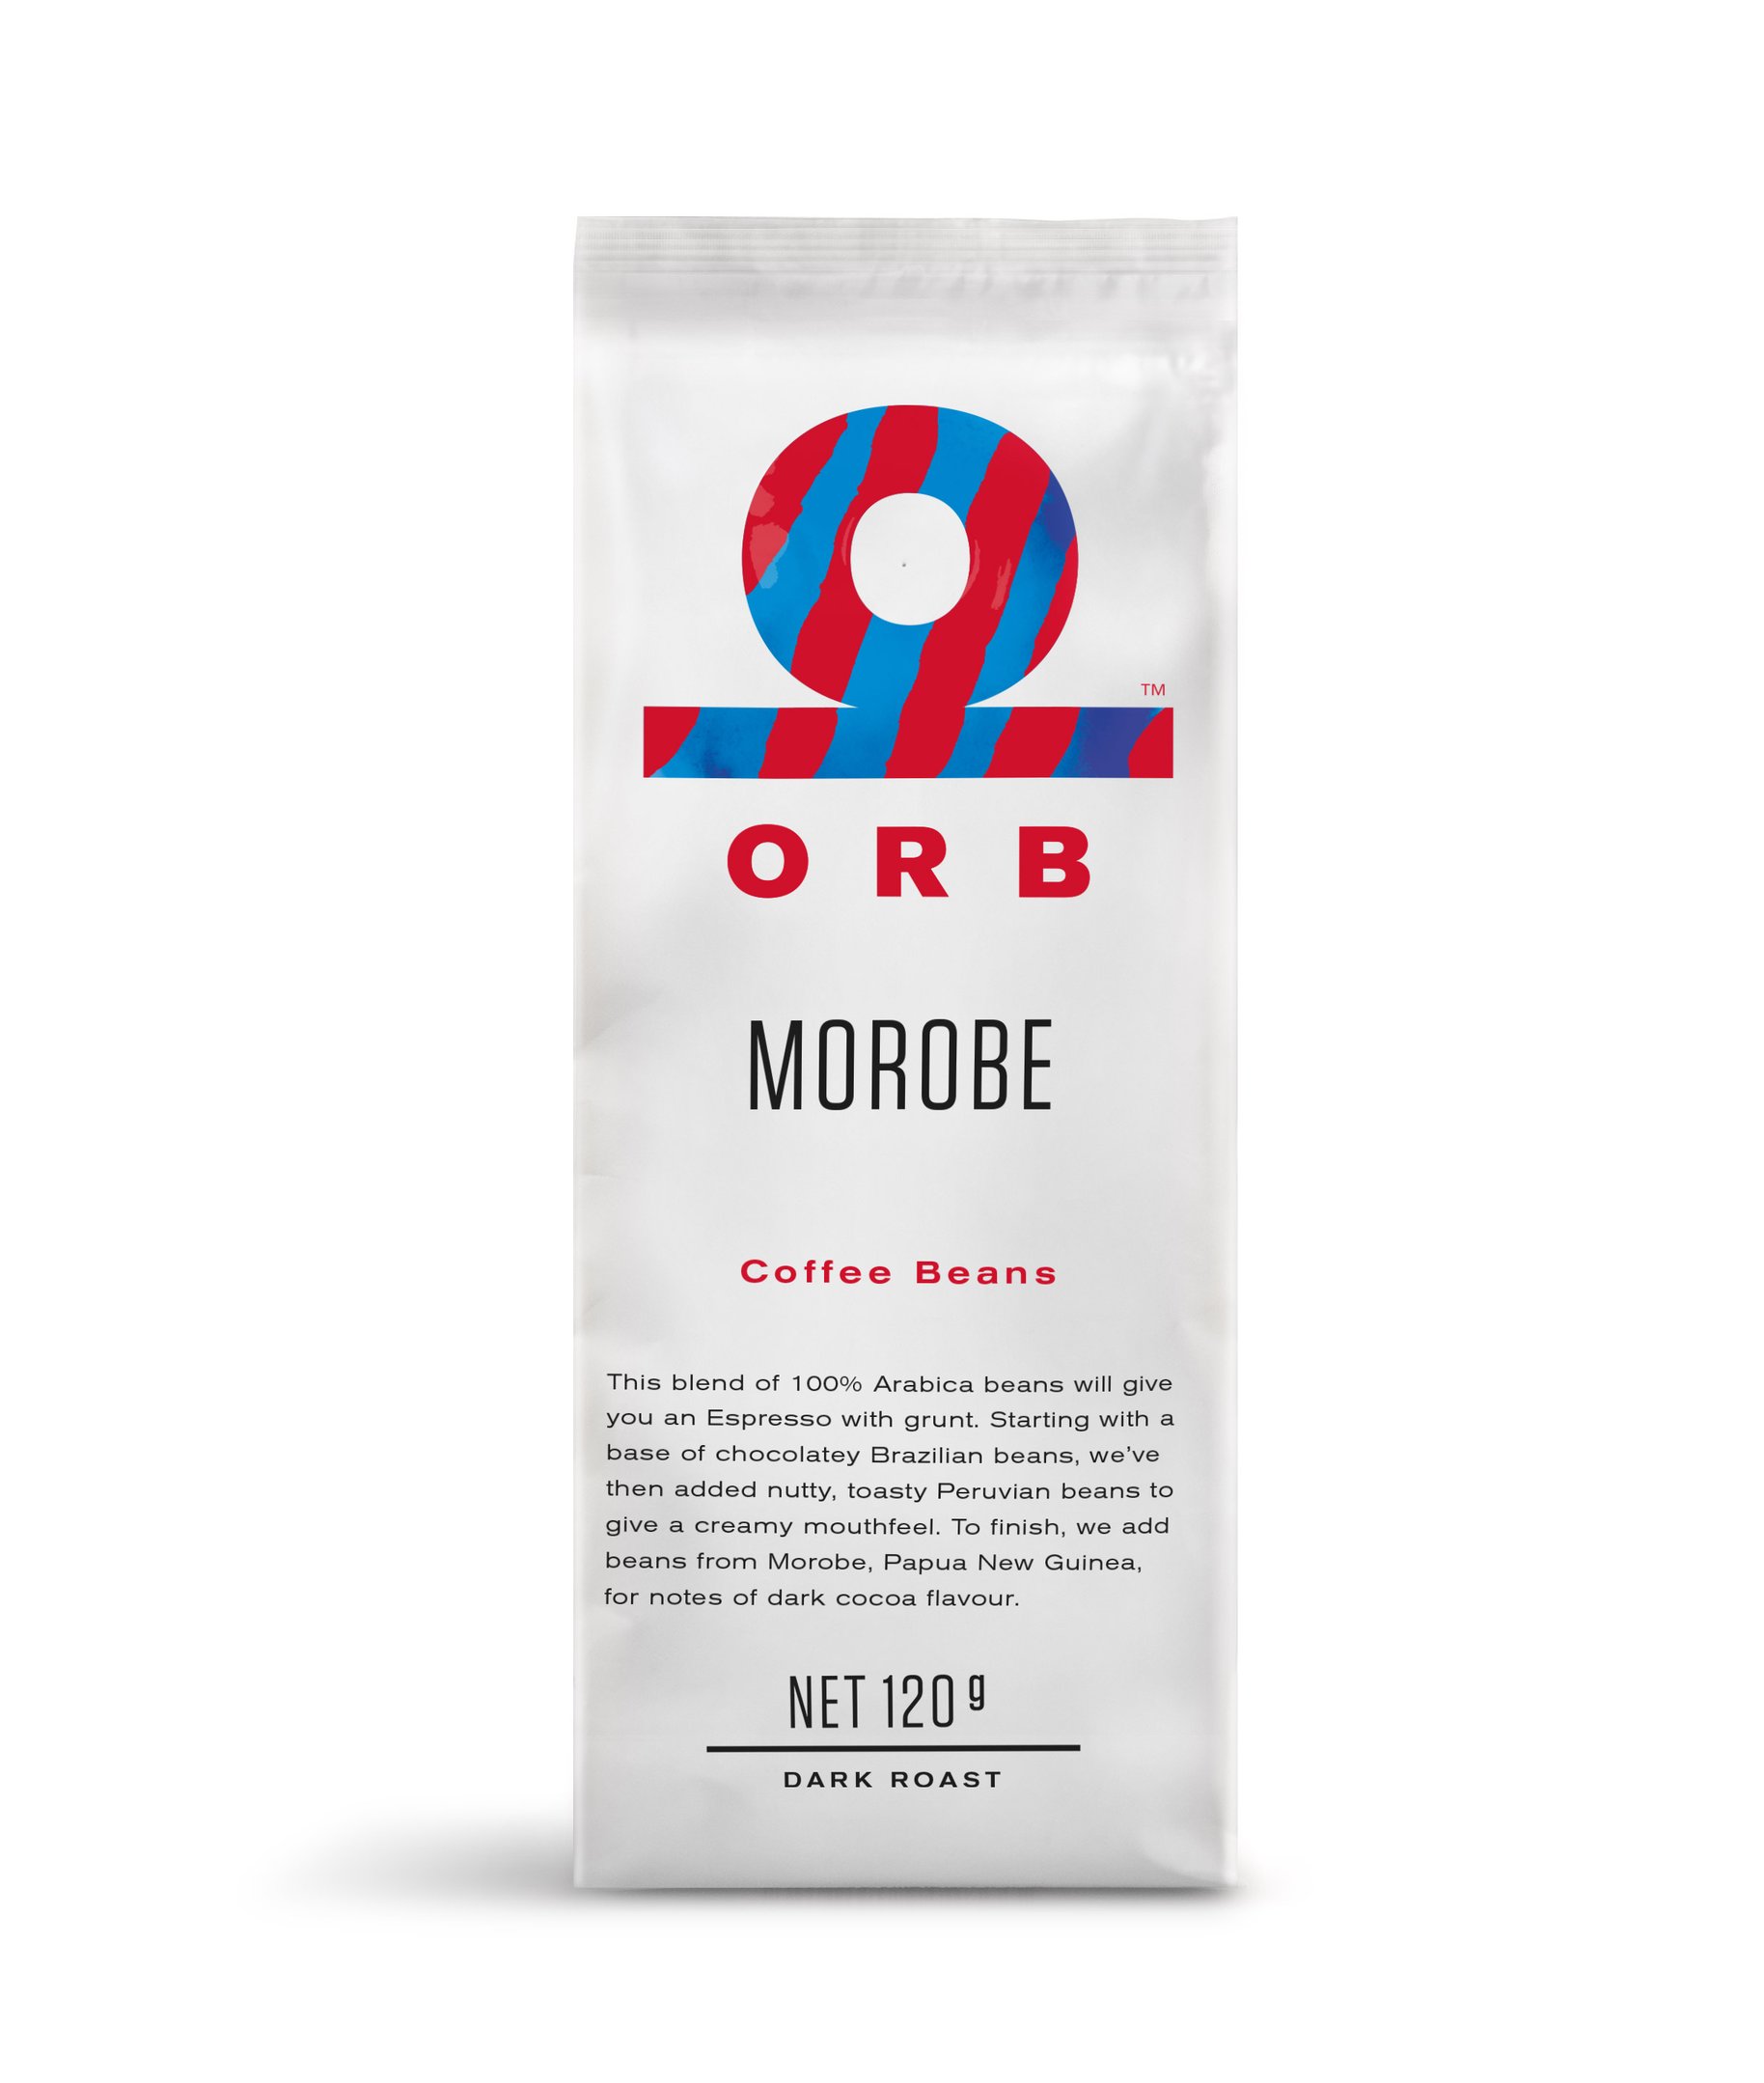 Orb Coffee Bean Packaging Design 